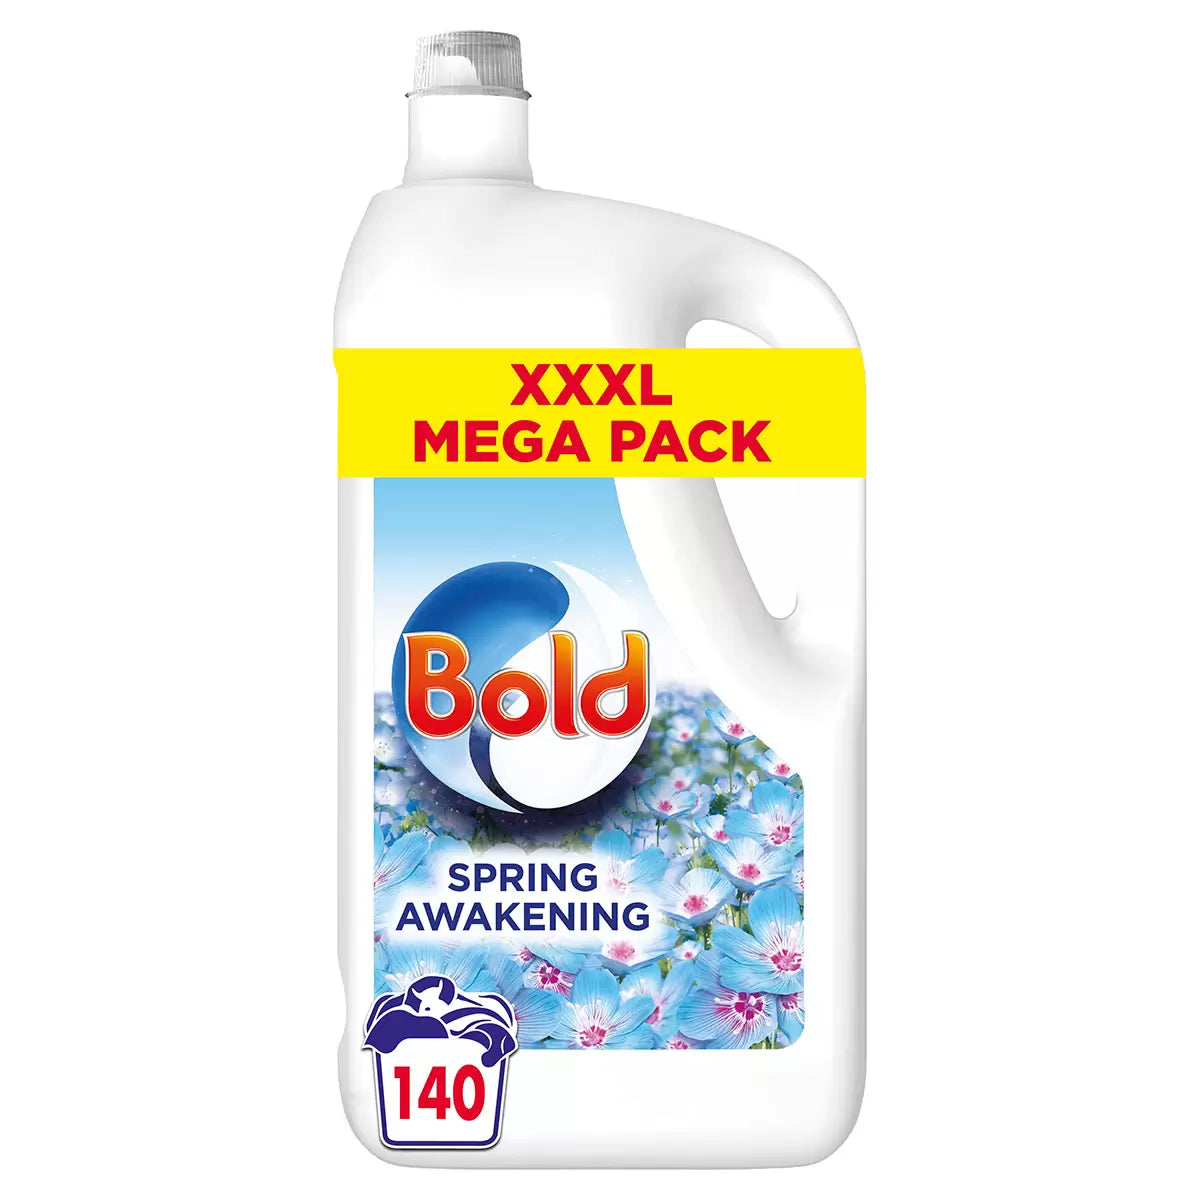 Bold Laundry Liquid Spring Awakening, 140 Wash - 4.34L